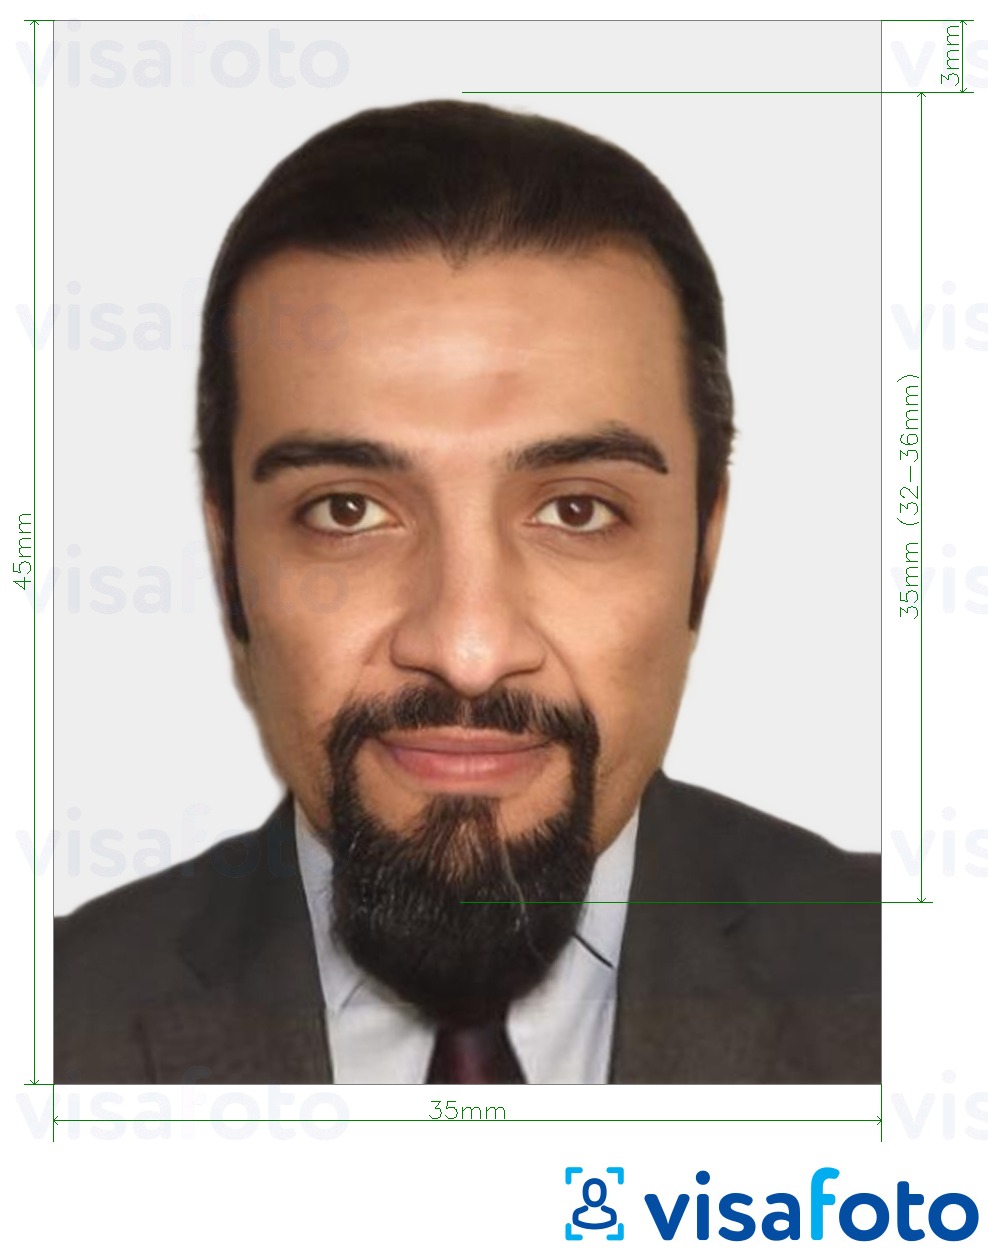 Exemples sur des photos pour Passeport marocain 35x45 mm (3,5x4,5 cm) avec les spécifications de taille exactes